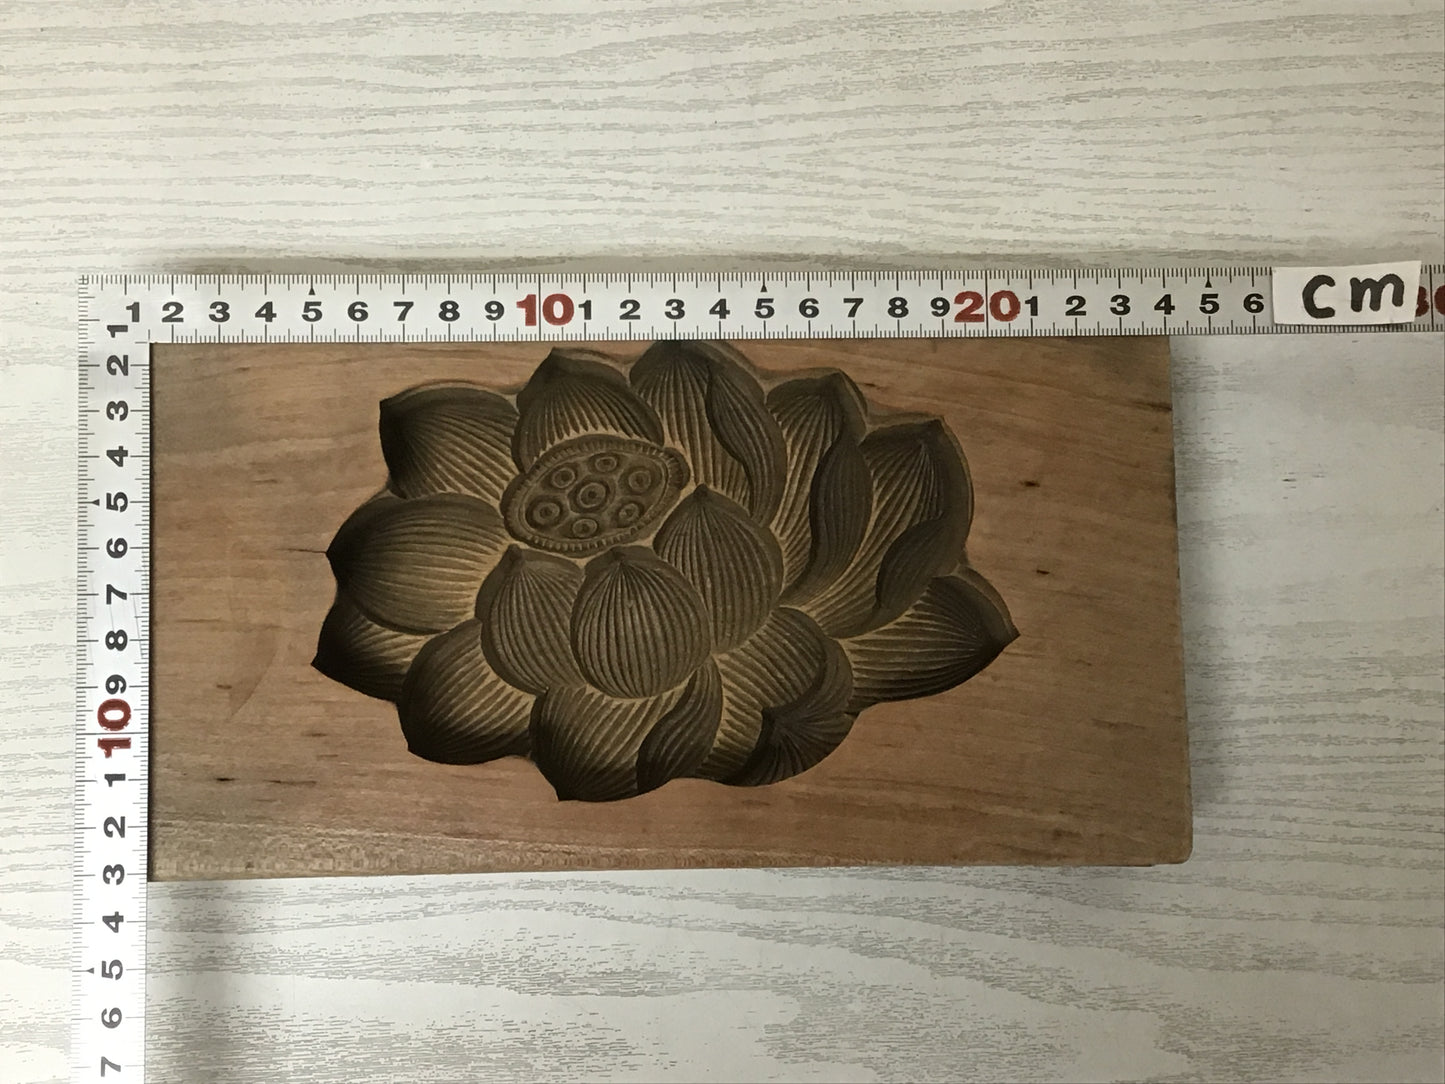 Y1960 KASHIGATA Lotus Flower Japanese vintage Wooden Pastry Mold wagashi